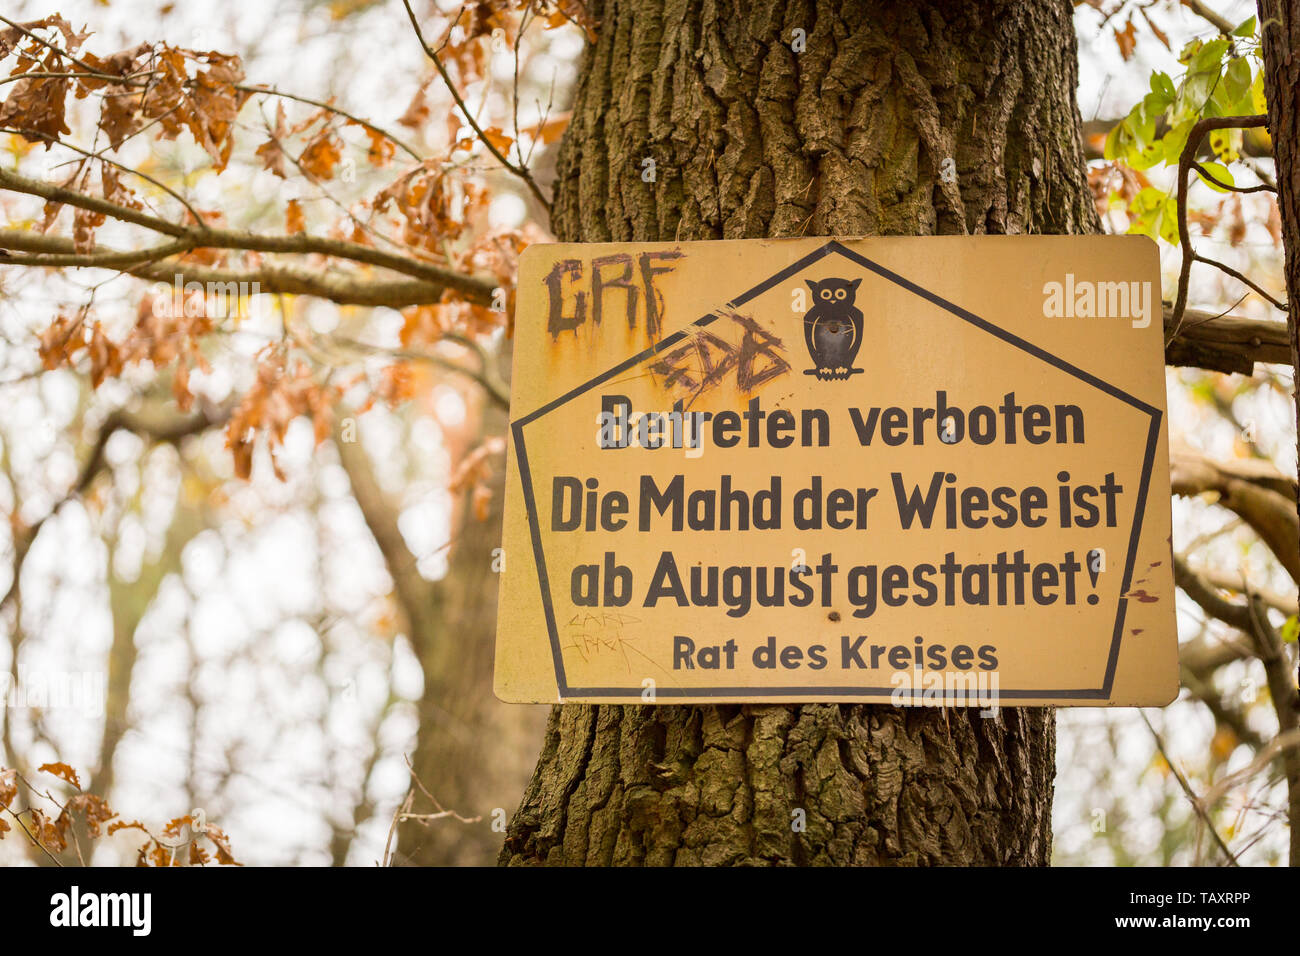 DDR Verbotsschild: Rat des Kreises. Betreten Verboten - Die Mahd der Wiese ist ab August gestattet! Stock Photo